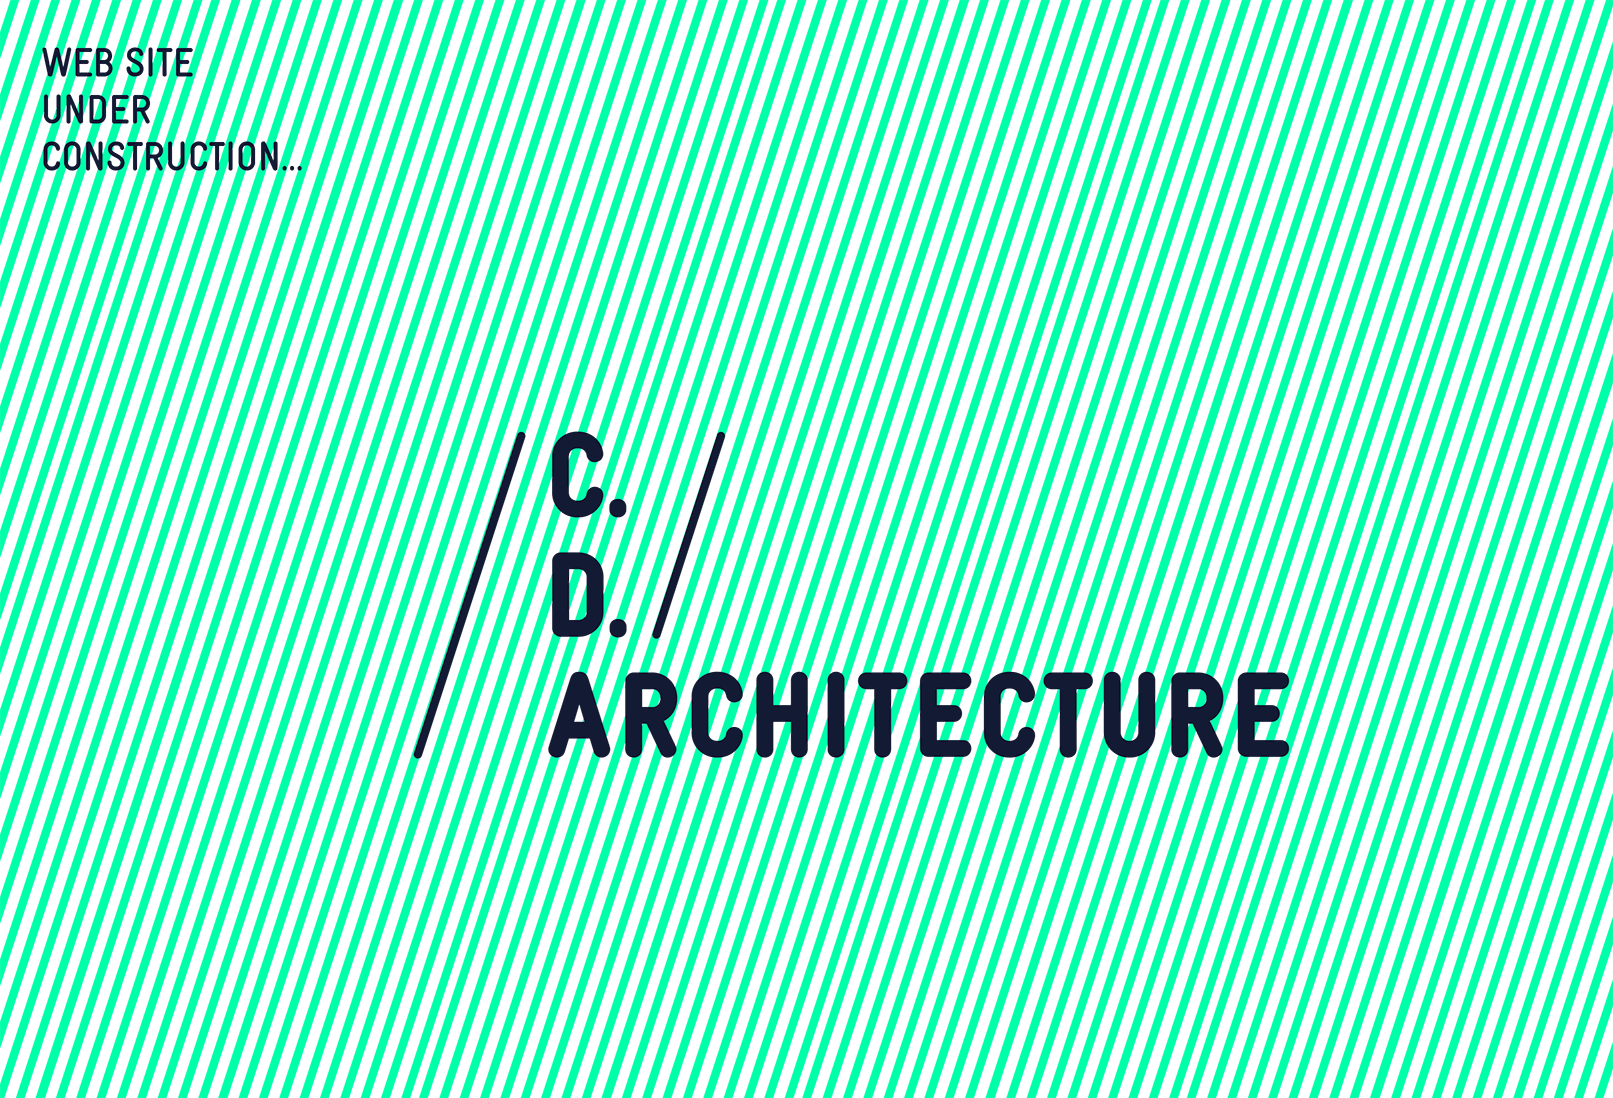 C.D.Architecte - Website under construction